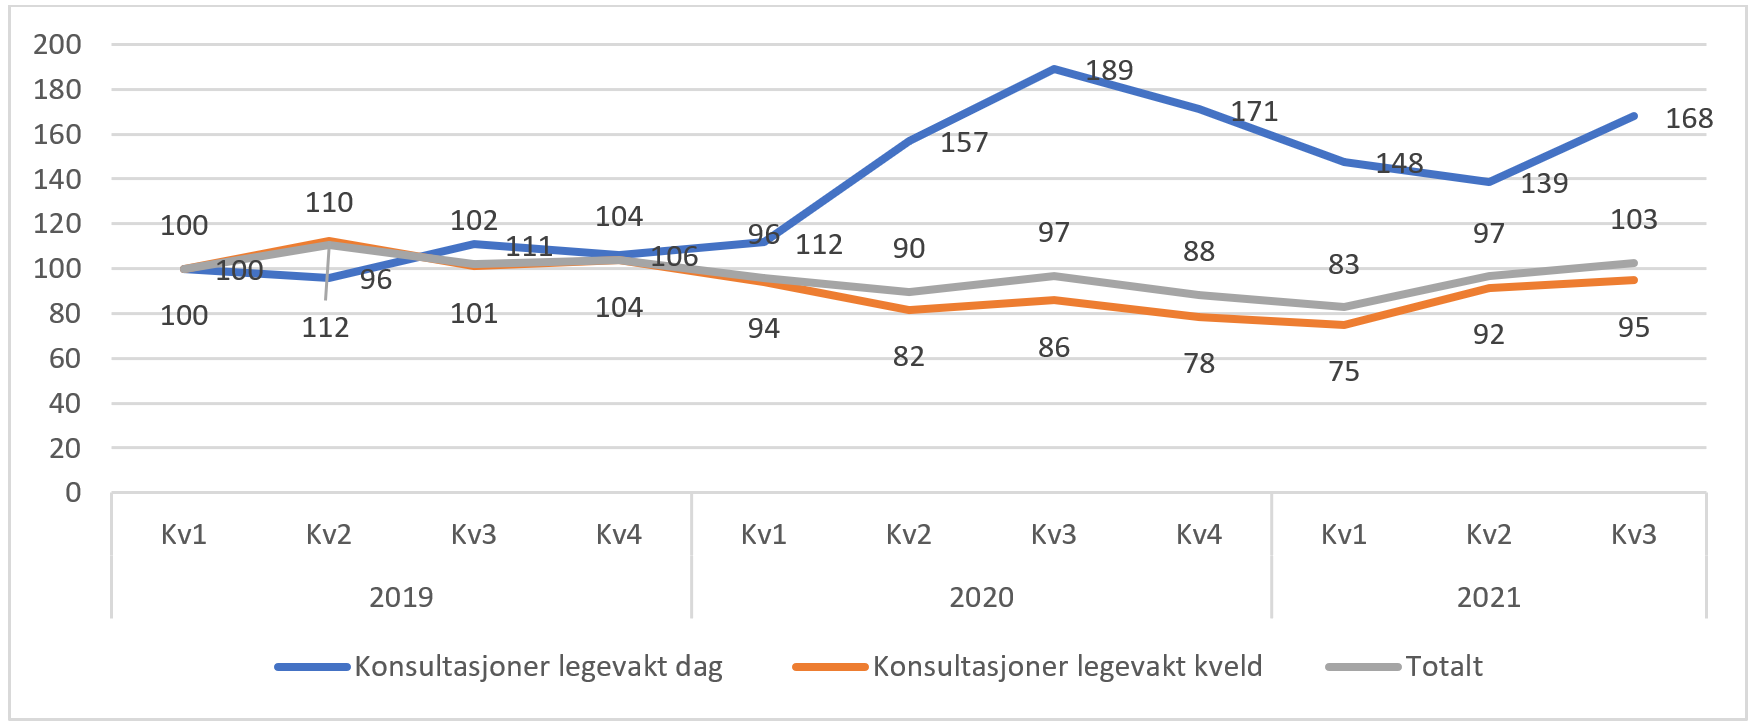 Utvikling i antall konsultasjoner på dagtid, kveldstid og totalt hos legevakt. pr. kvartal for Norge totalt. Prosentendring fra 1.kvartal 2019 til 3.kvartal 2021. 1.kvartal 2019 er satt som 100 prosent.